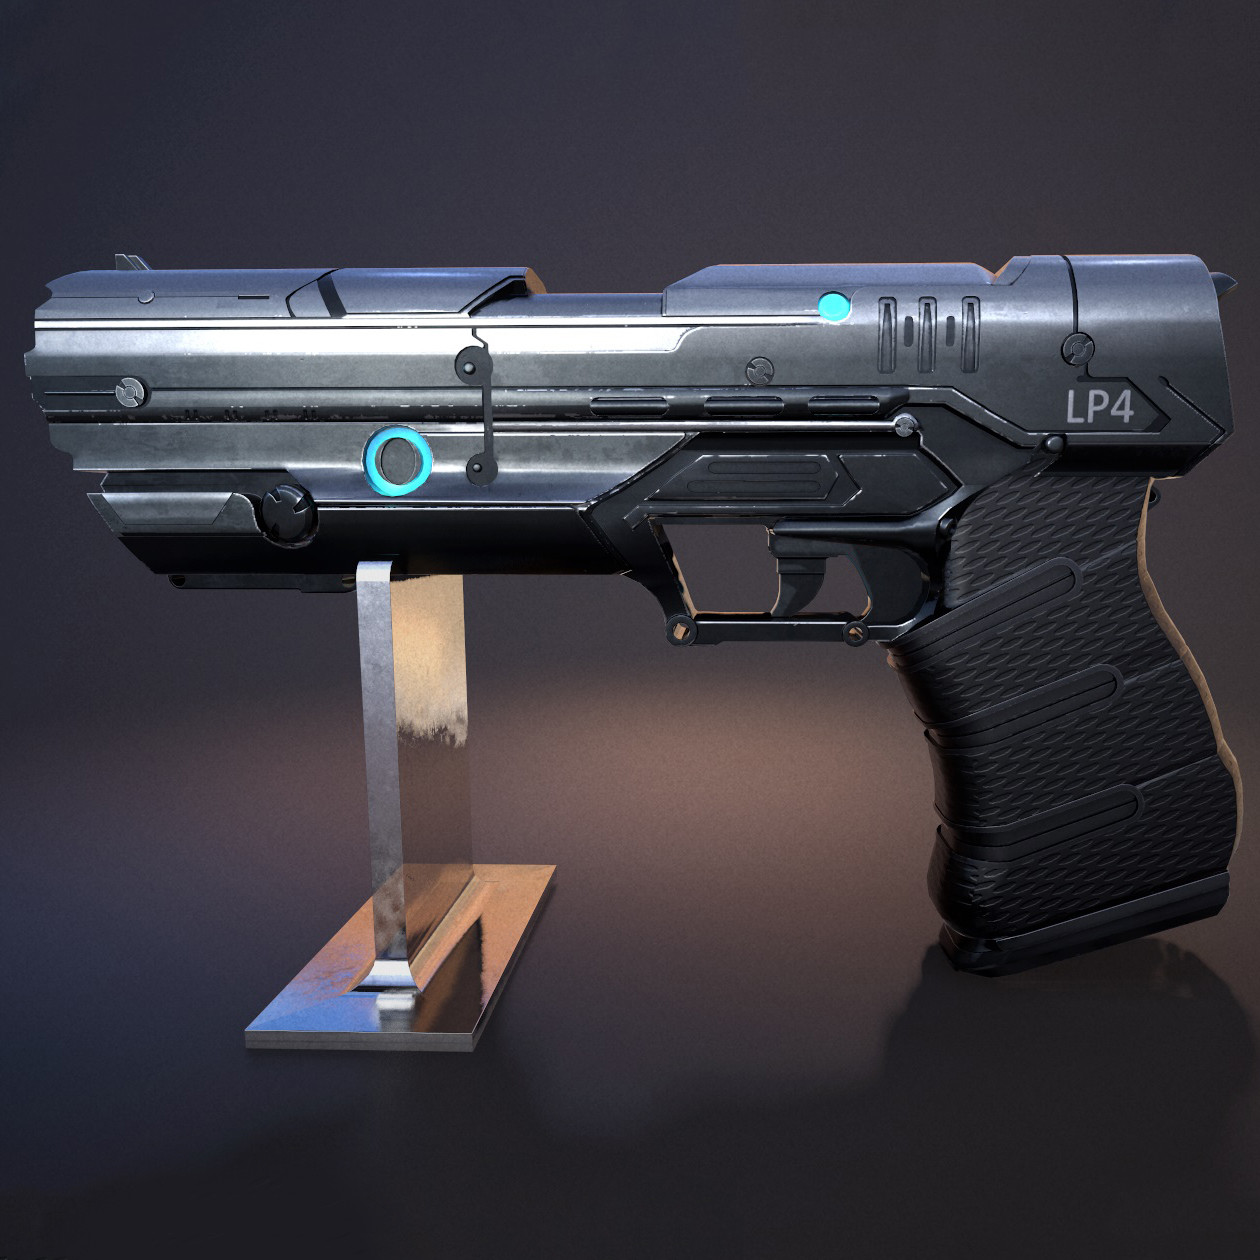 ArtStation - Sci-Fi Handgun